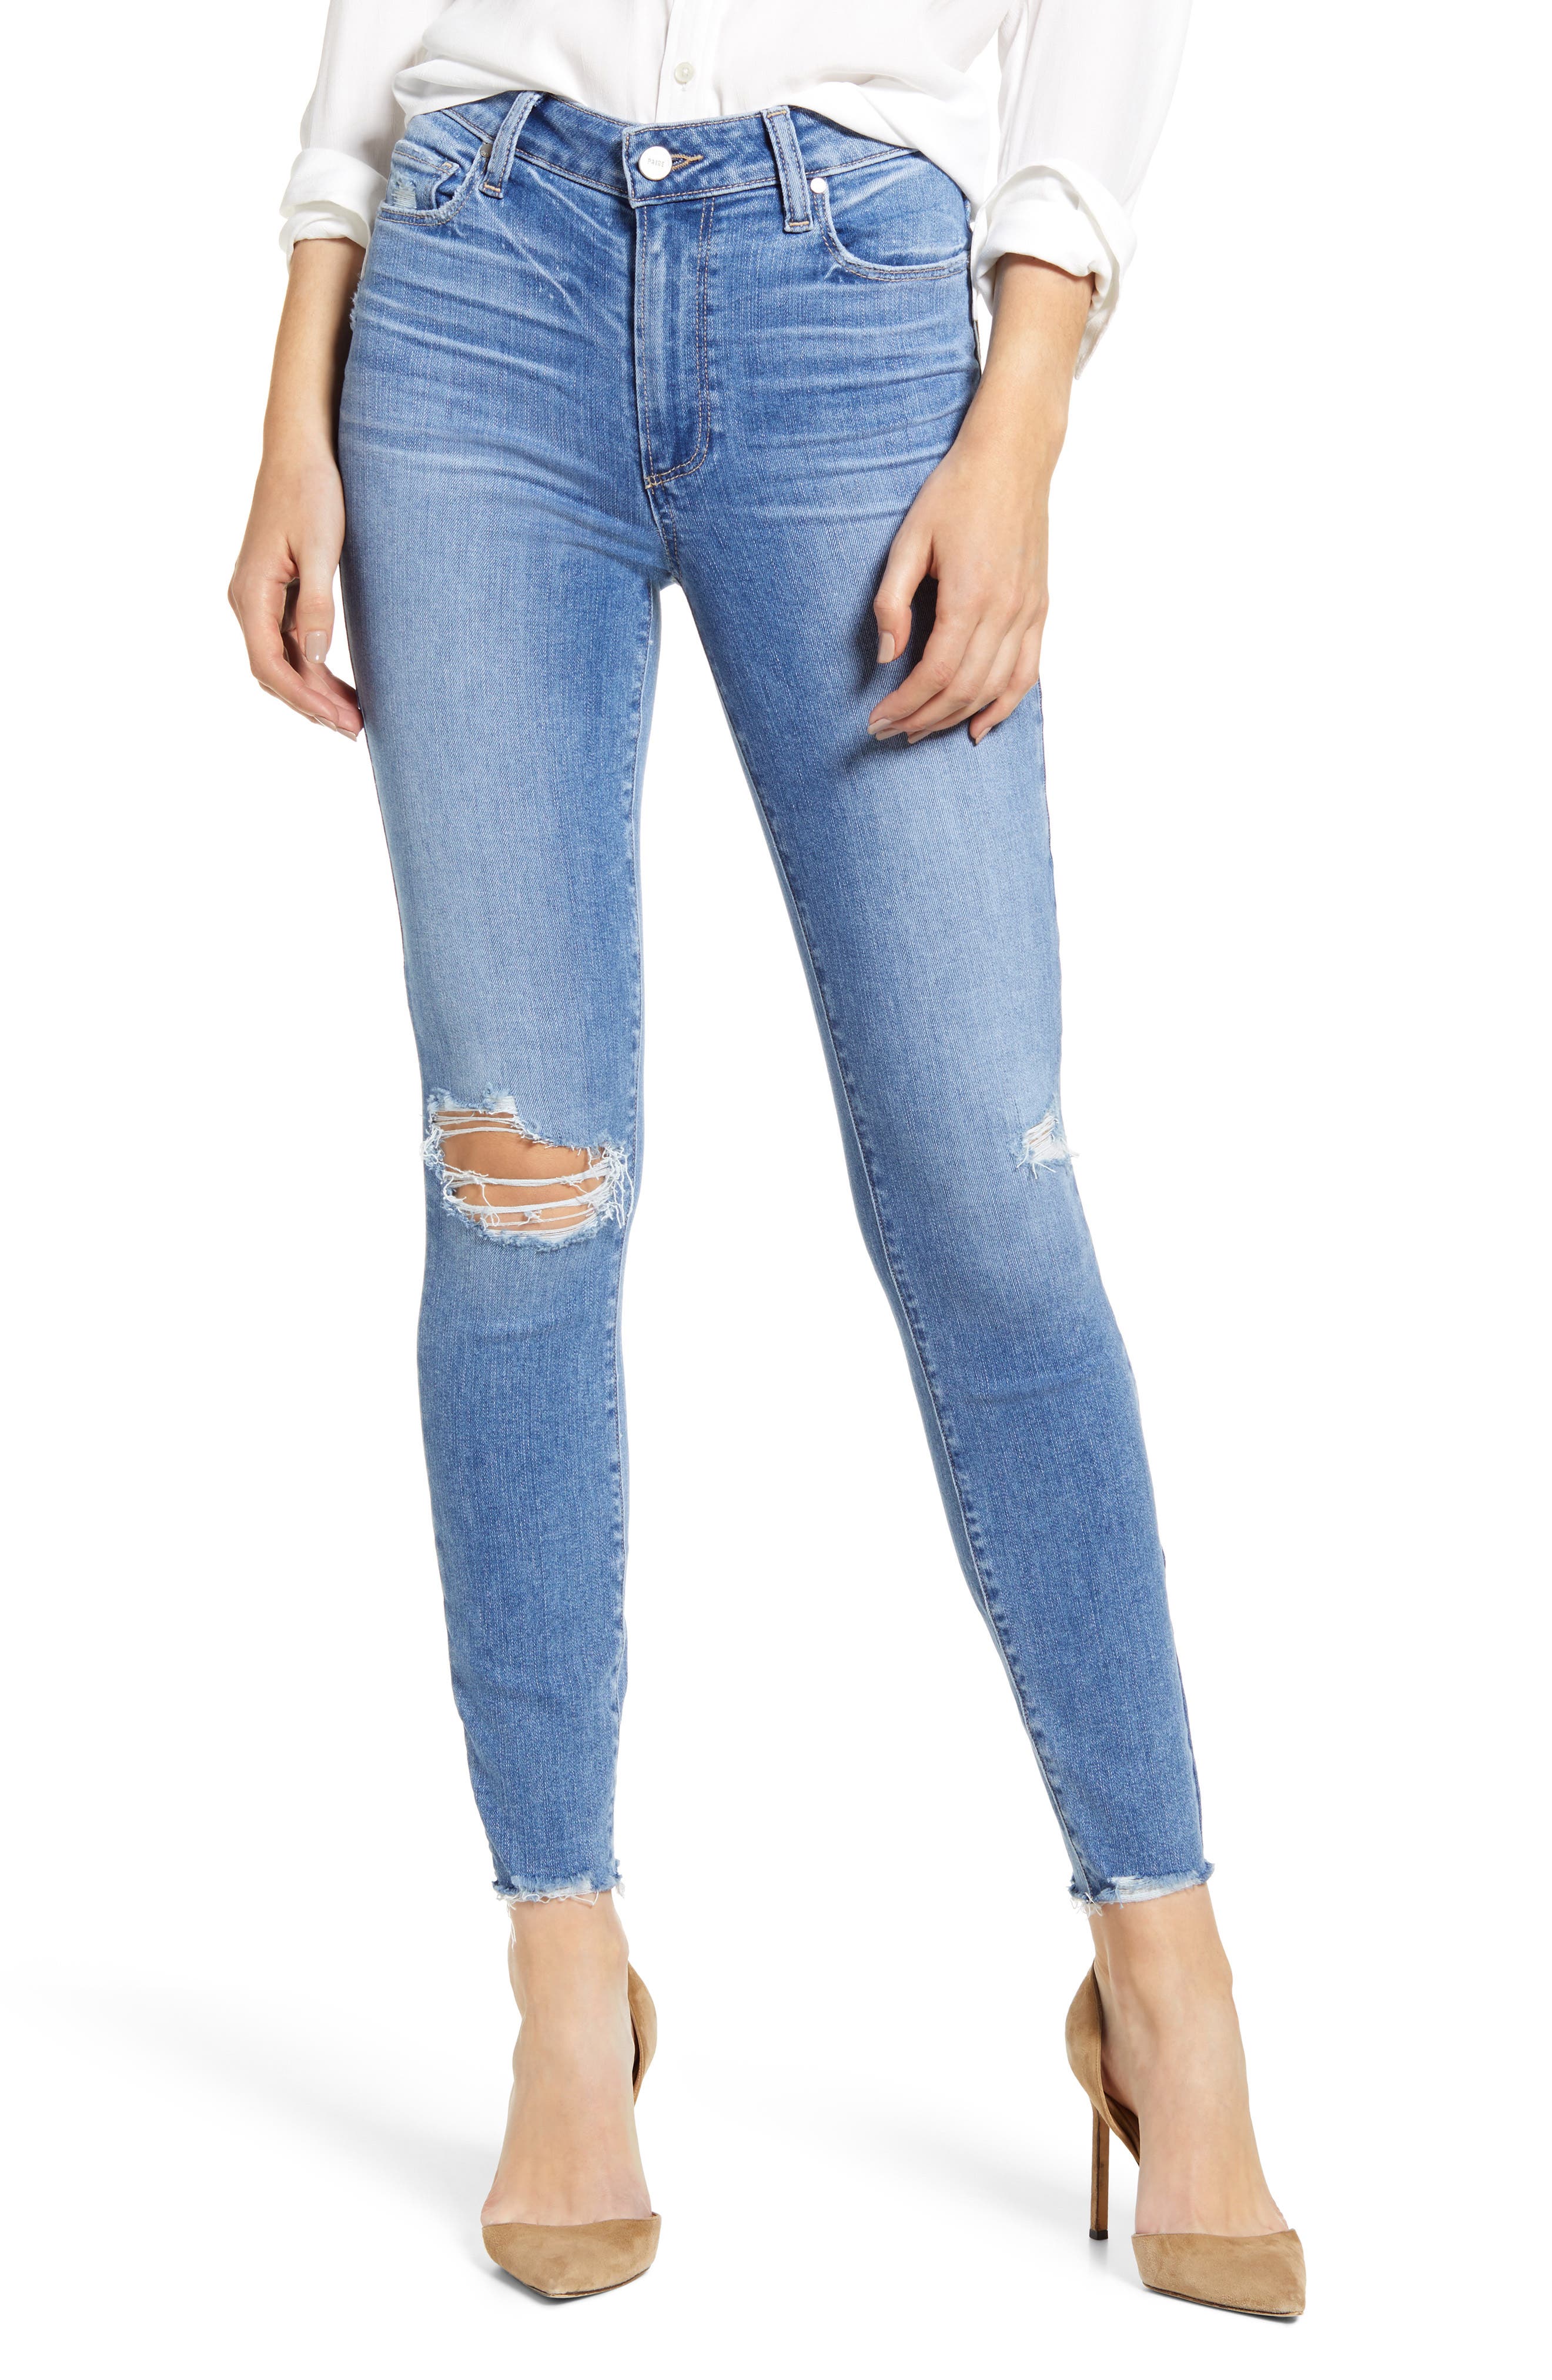 paige high waisted skinny jeans